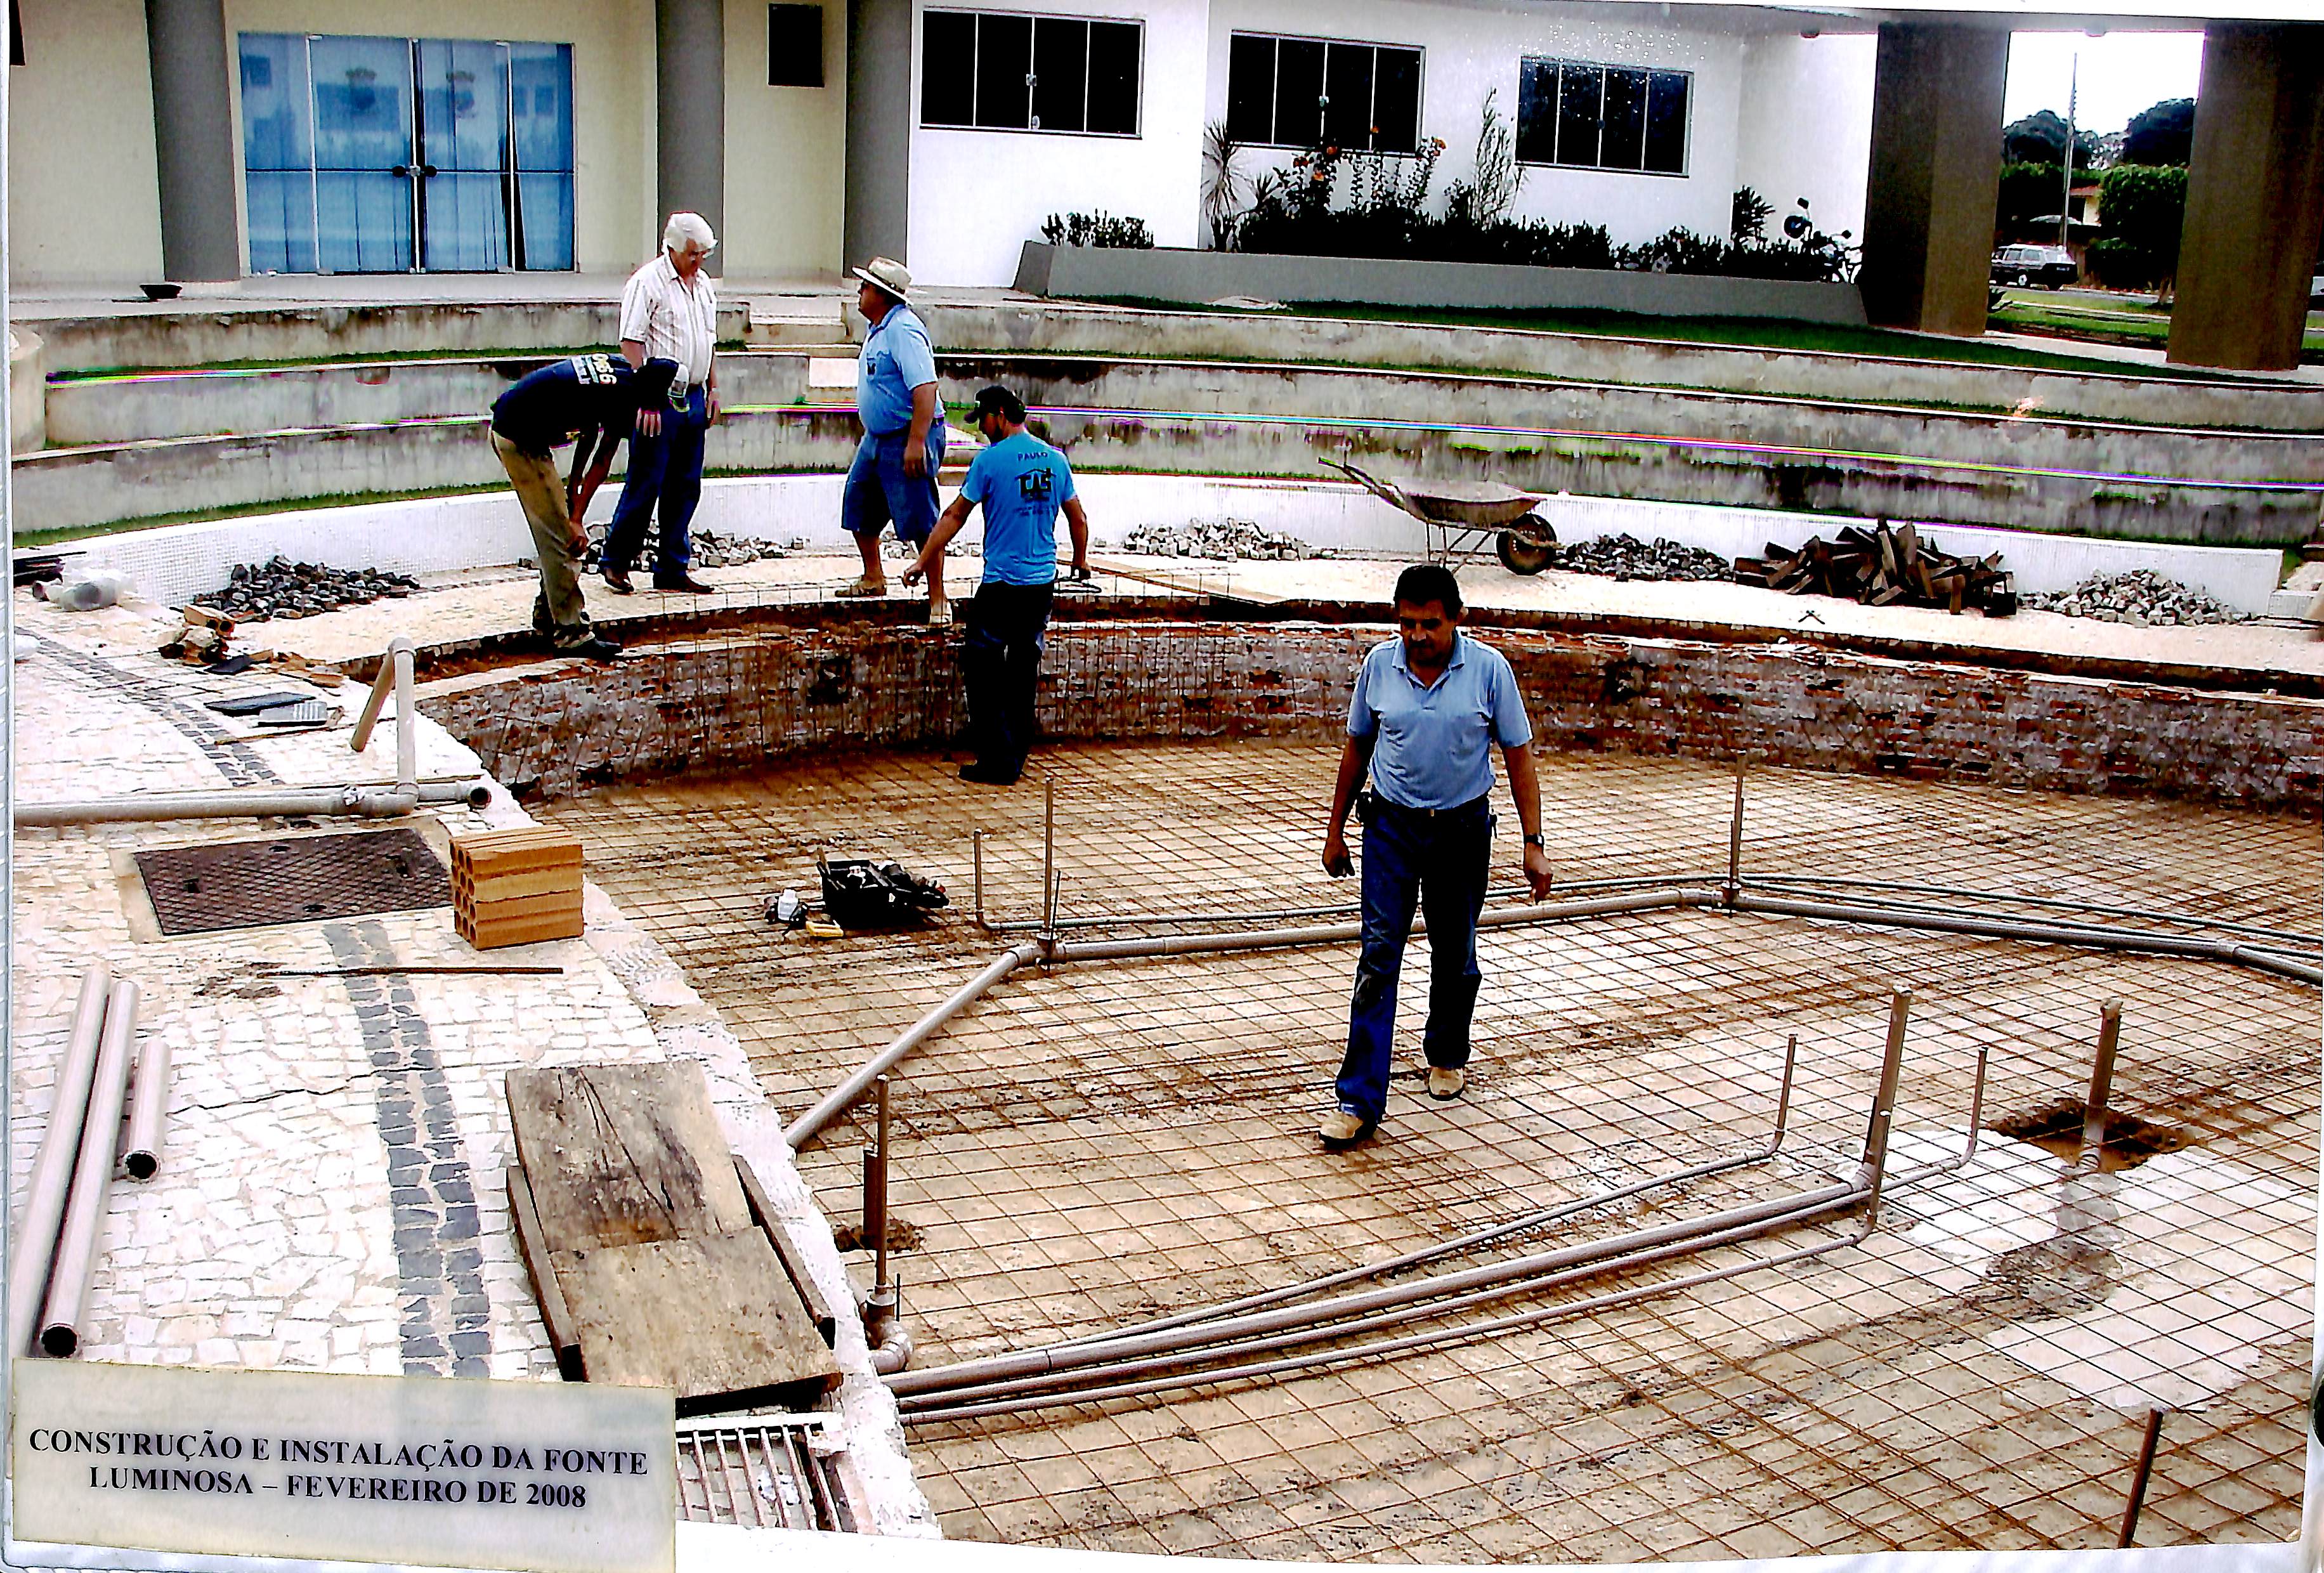 Construção e instalação da fonte luminosa - Fevereiro de 2008